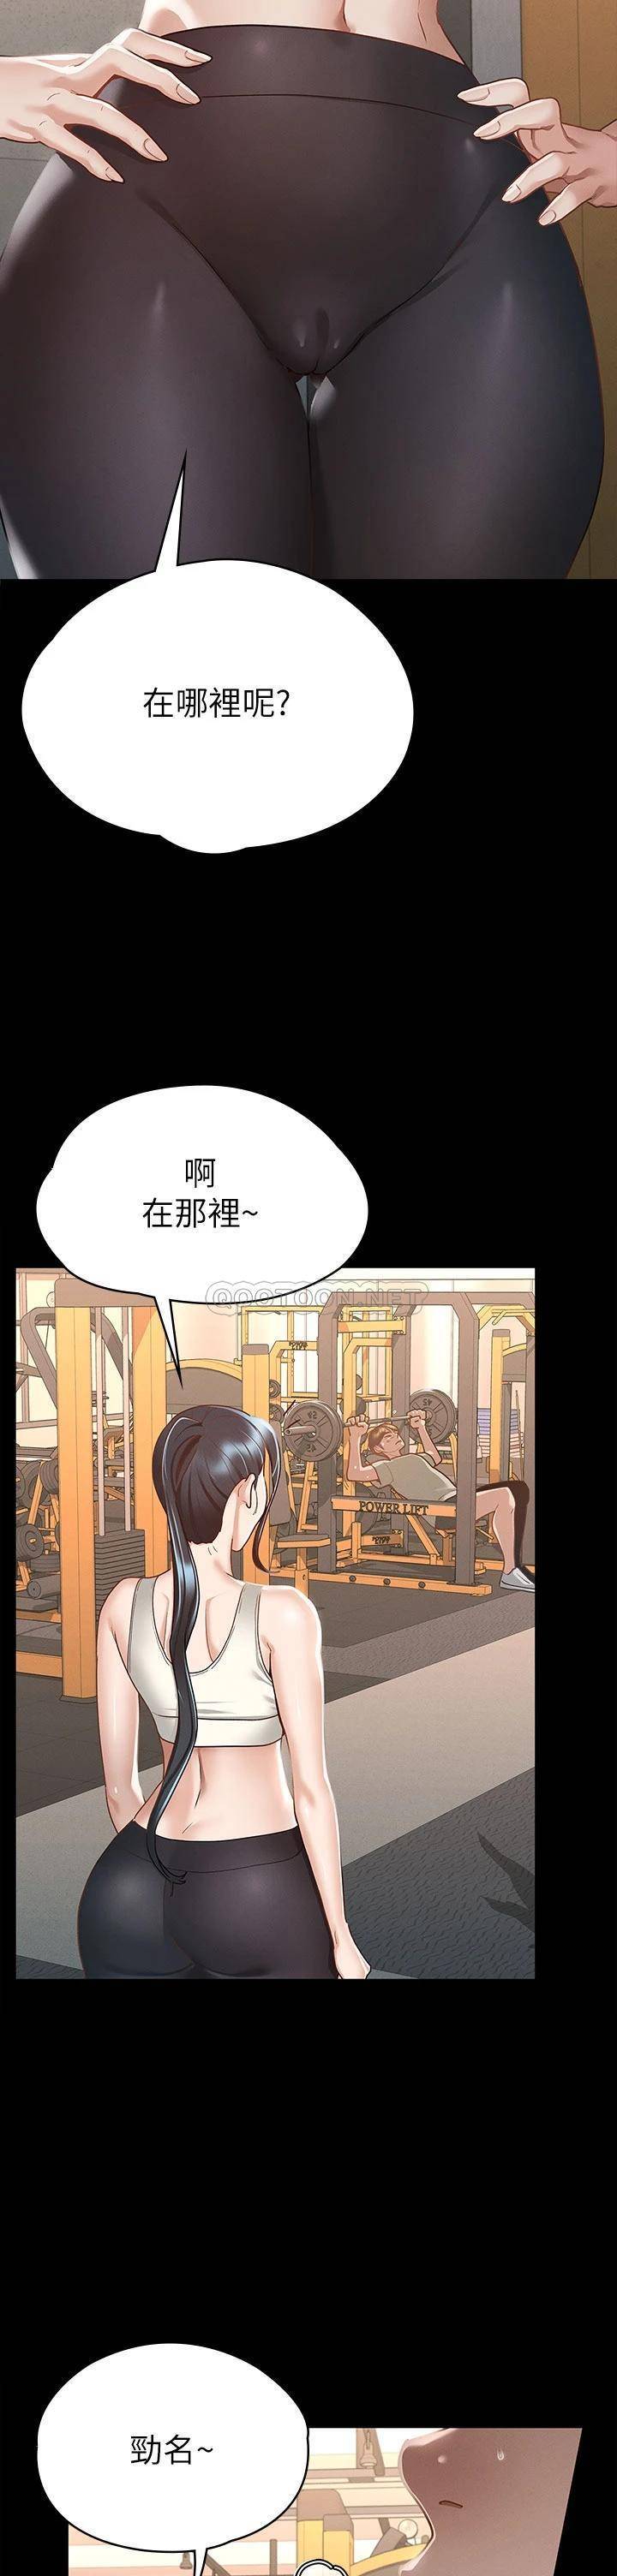 《征服女神》漫画 第20话 健身教练的亲密接触